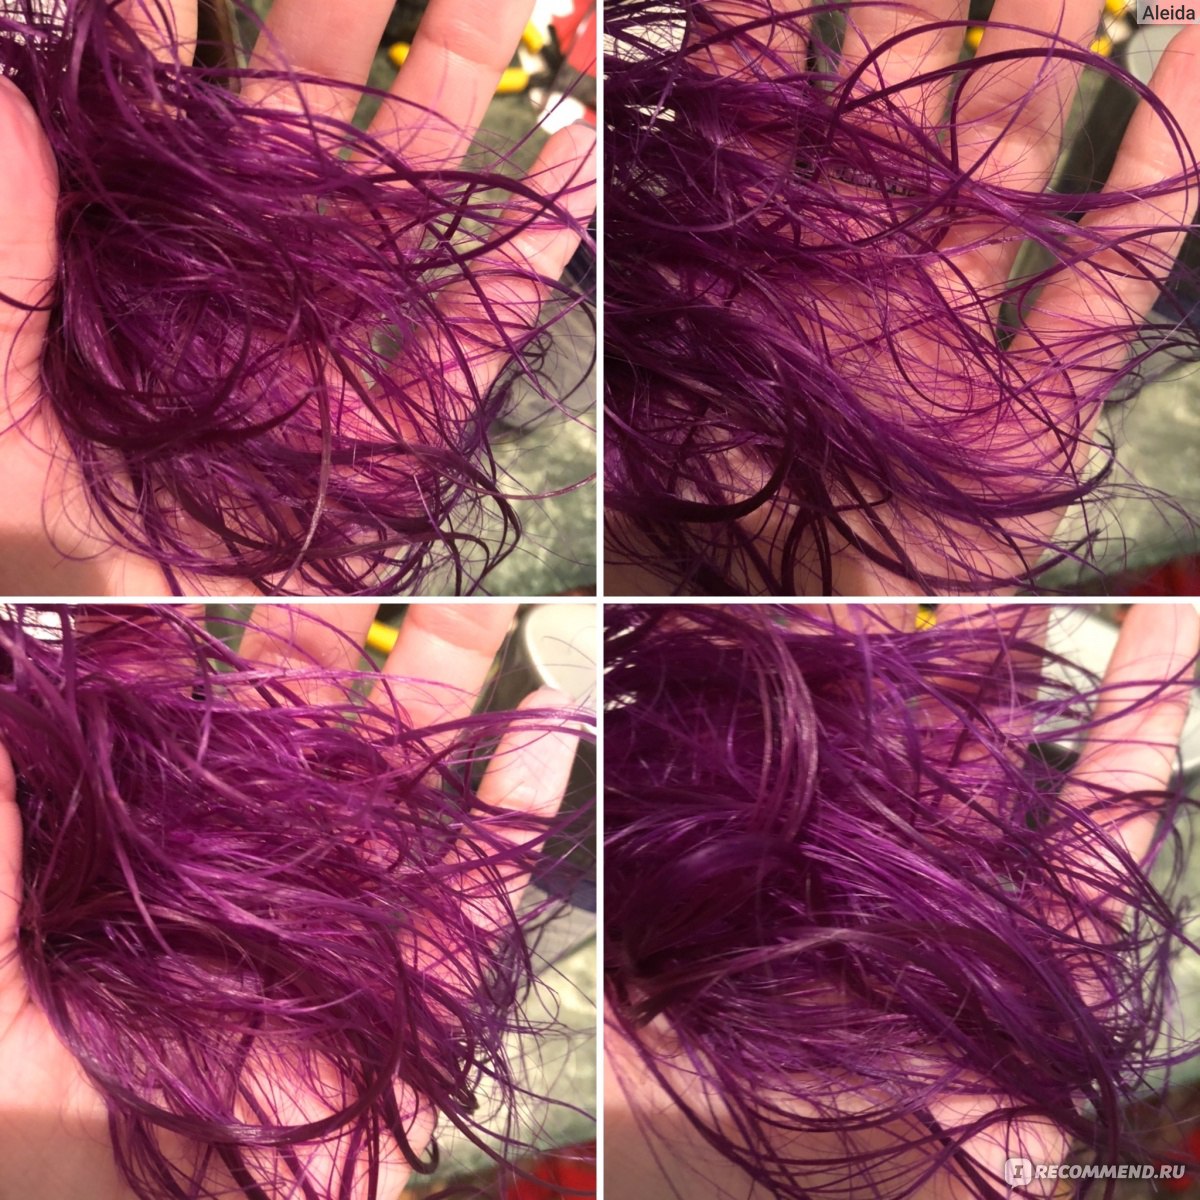 Как в домашних условиях убрать фиолетовый оттенок с волос в домашних условиях